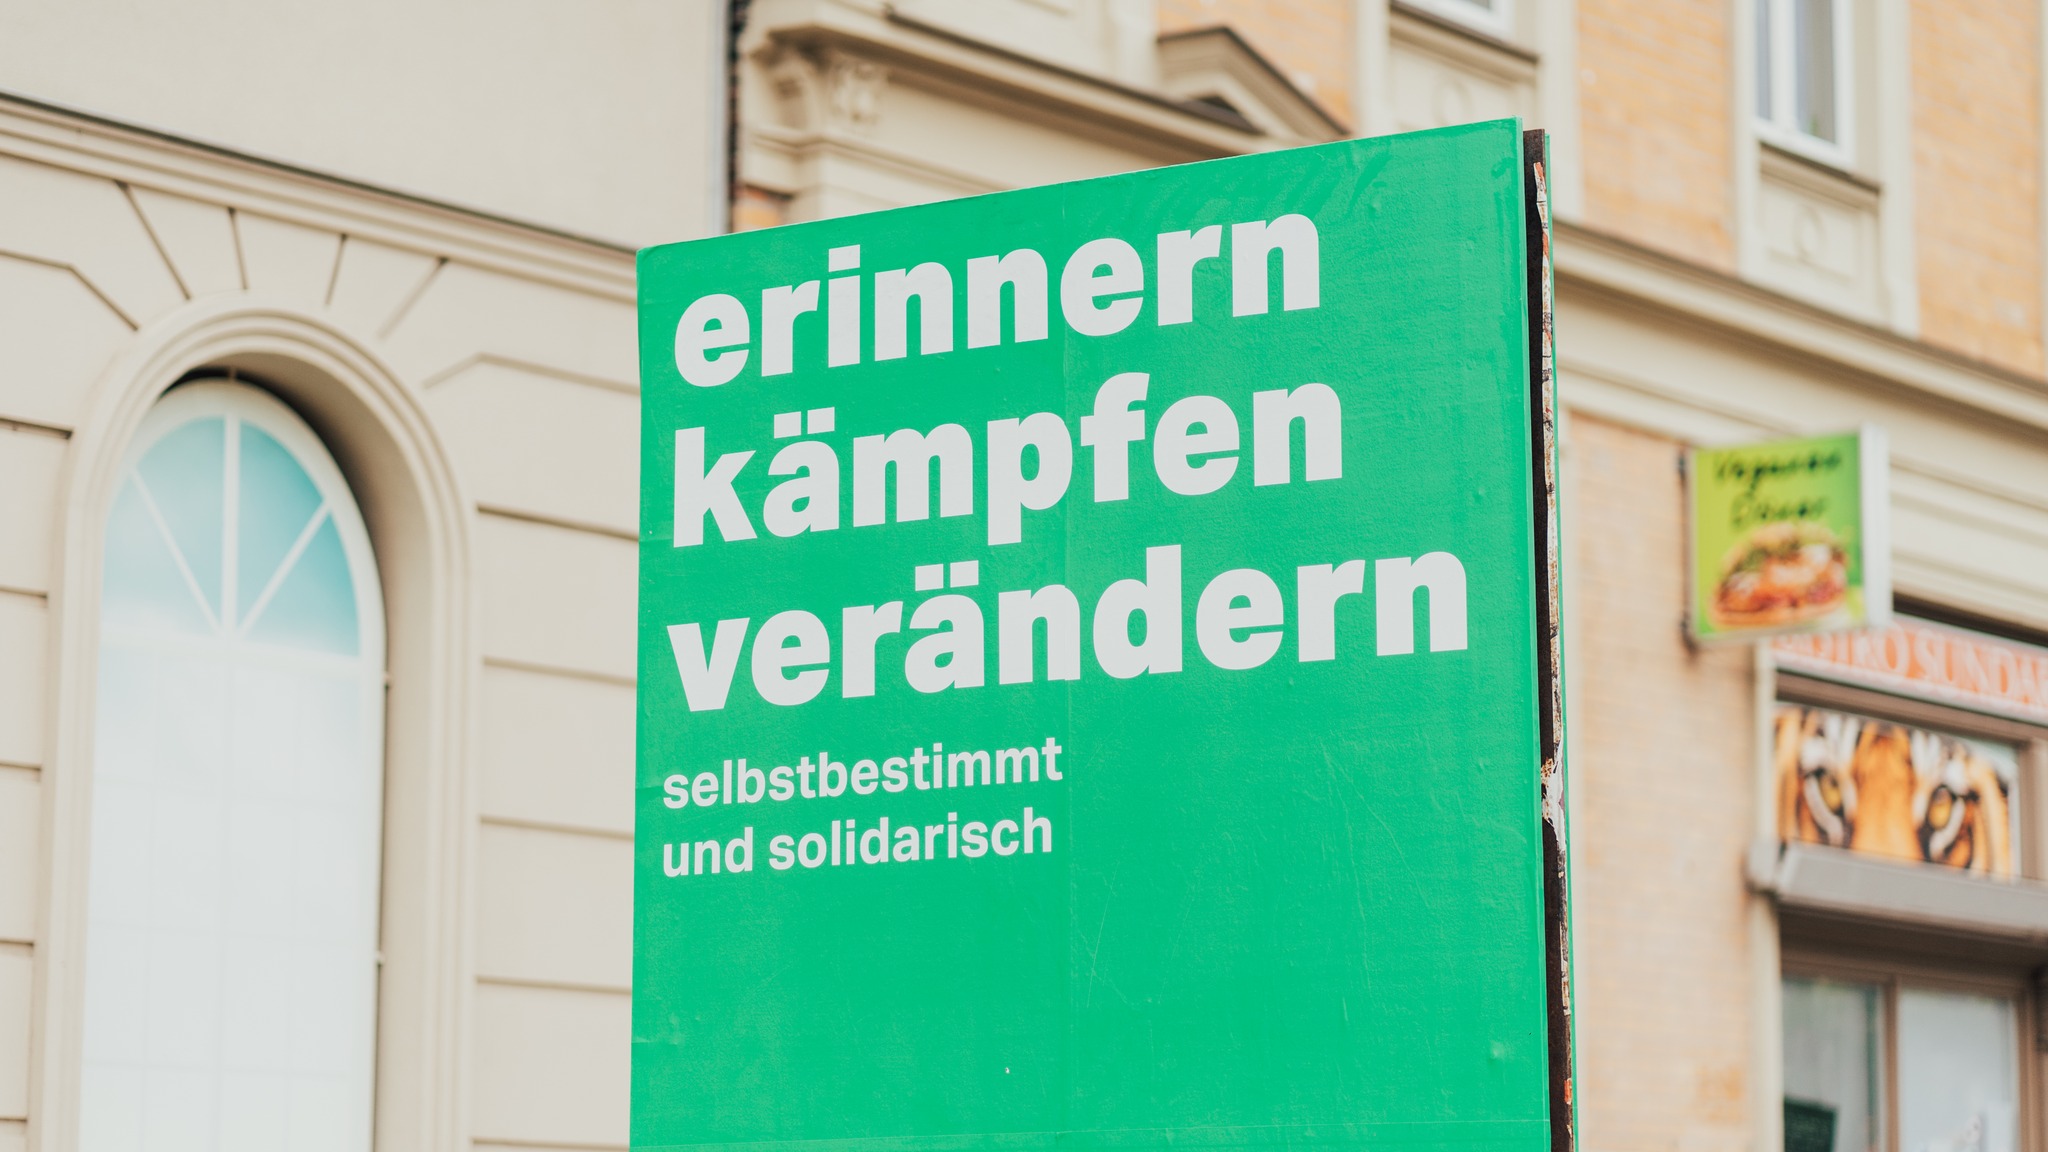 Straßenzug in Halle (Saale). Im Vordergrund ein aufgestelltes Banner: Vor grünen Hintergrund die weiße Aufschrift: "erinnern kämpfen verändern selbstbestimmt und solidarisch"